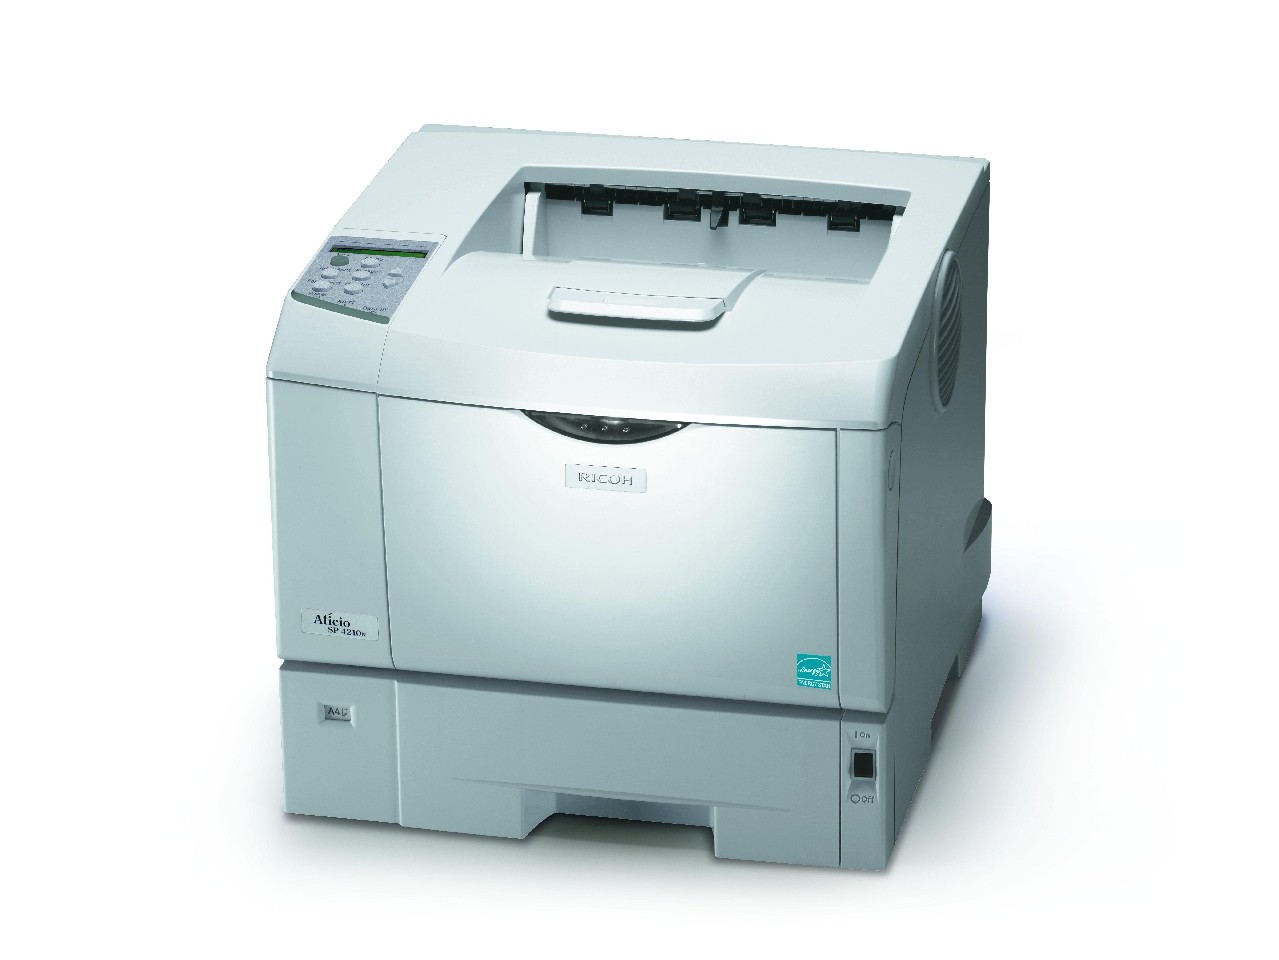 Aficio SP 4210N oferuje zaawansowane funkcje druku, a wszystko to przy zachowaniu niskiego całkowitego kosztu posiadania (TCO)